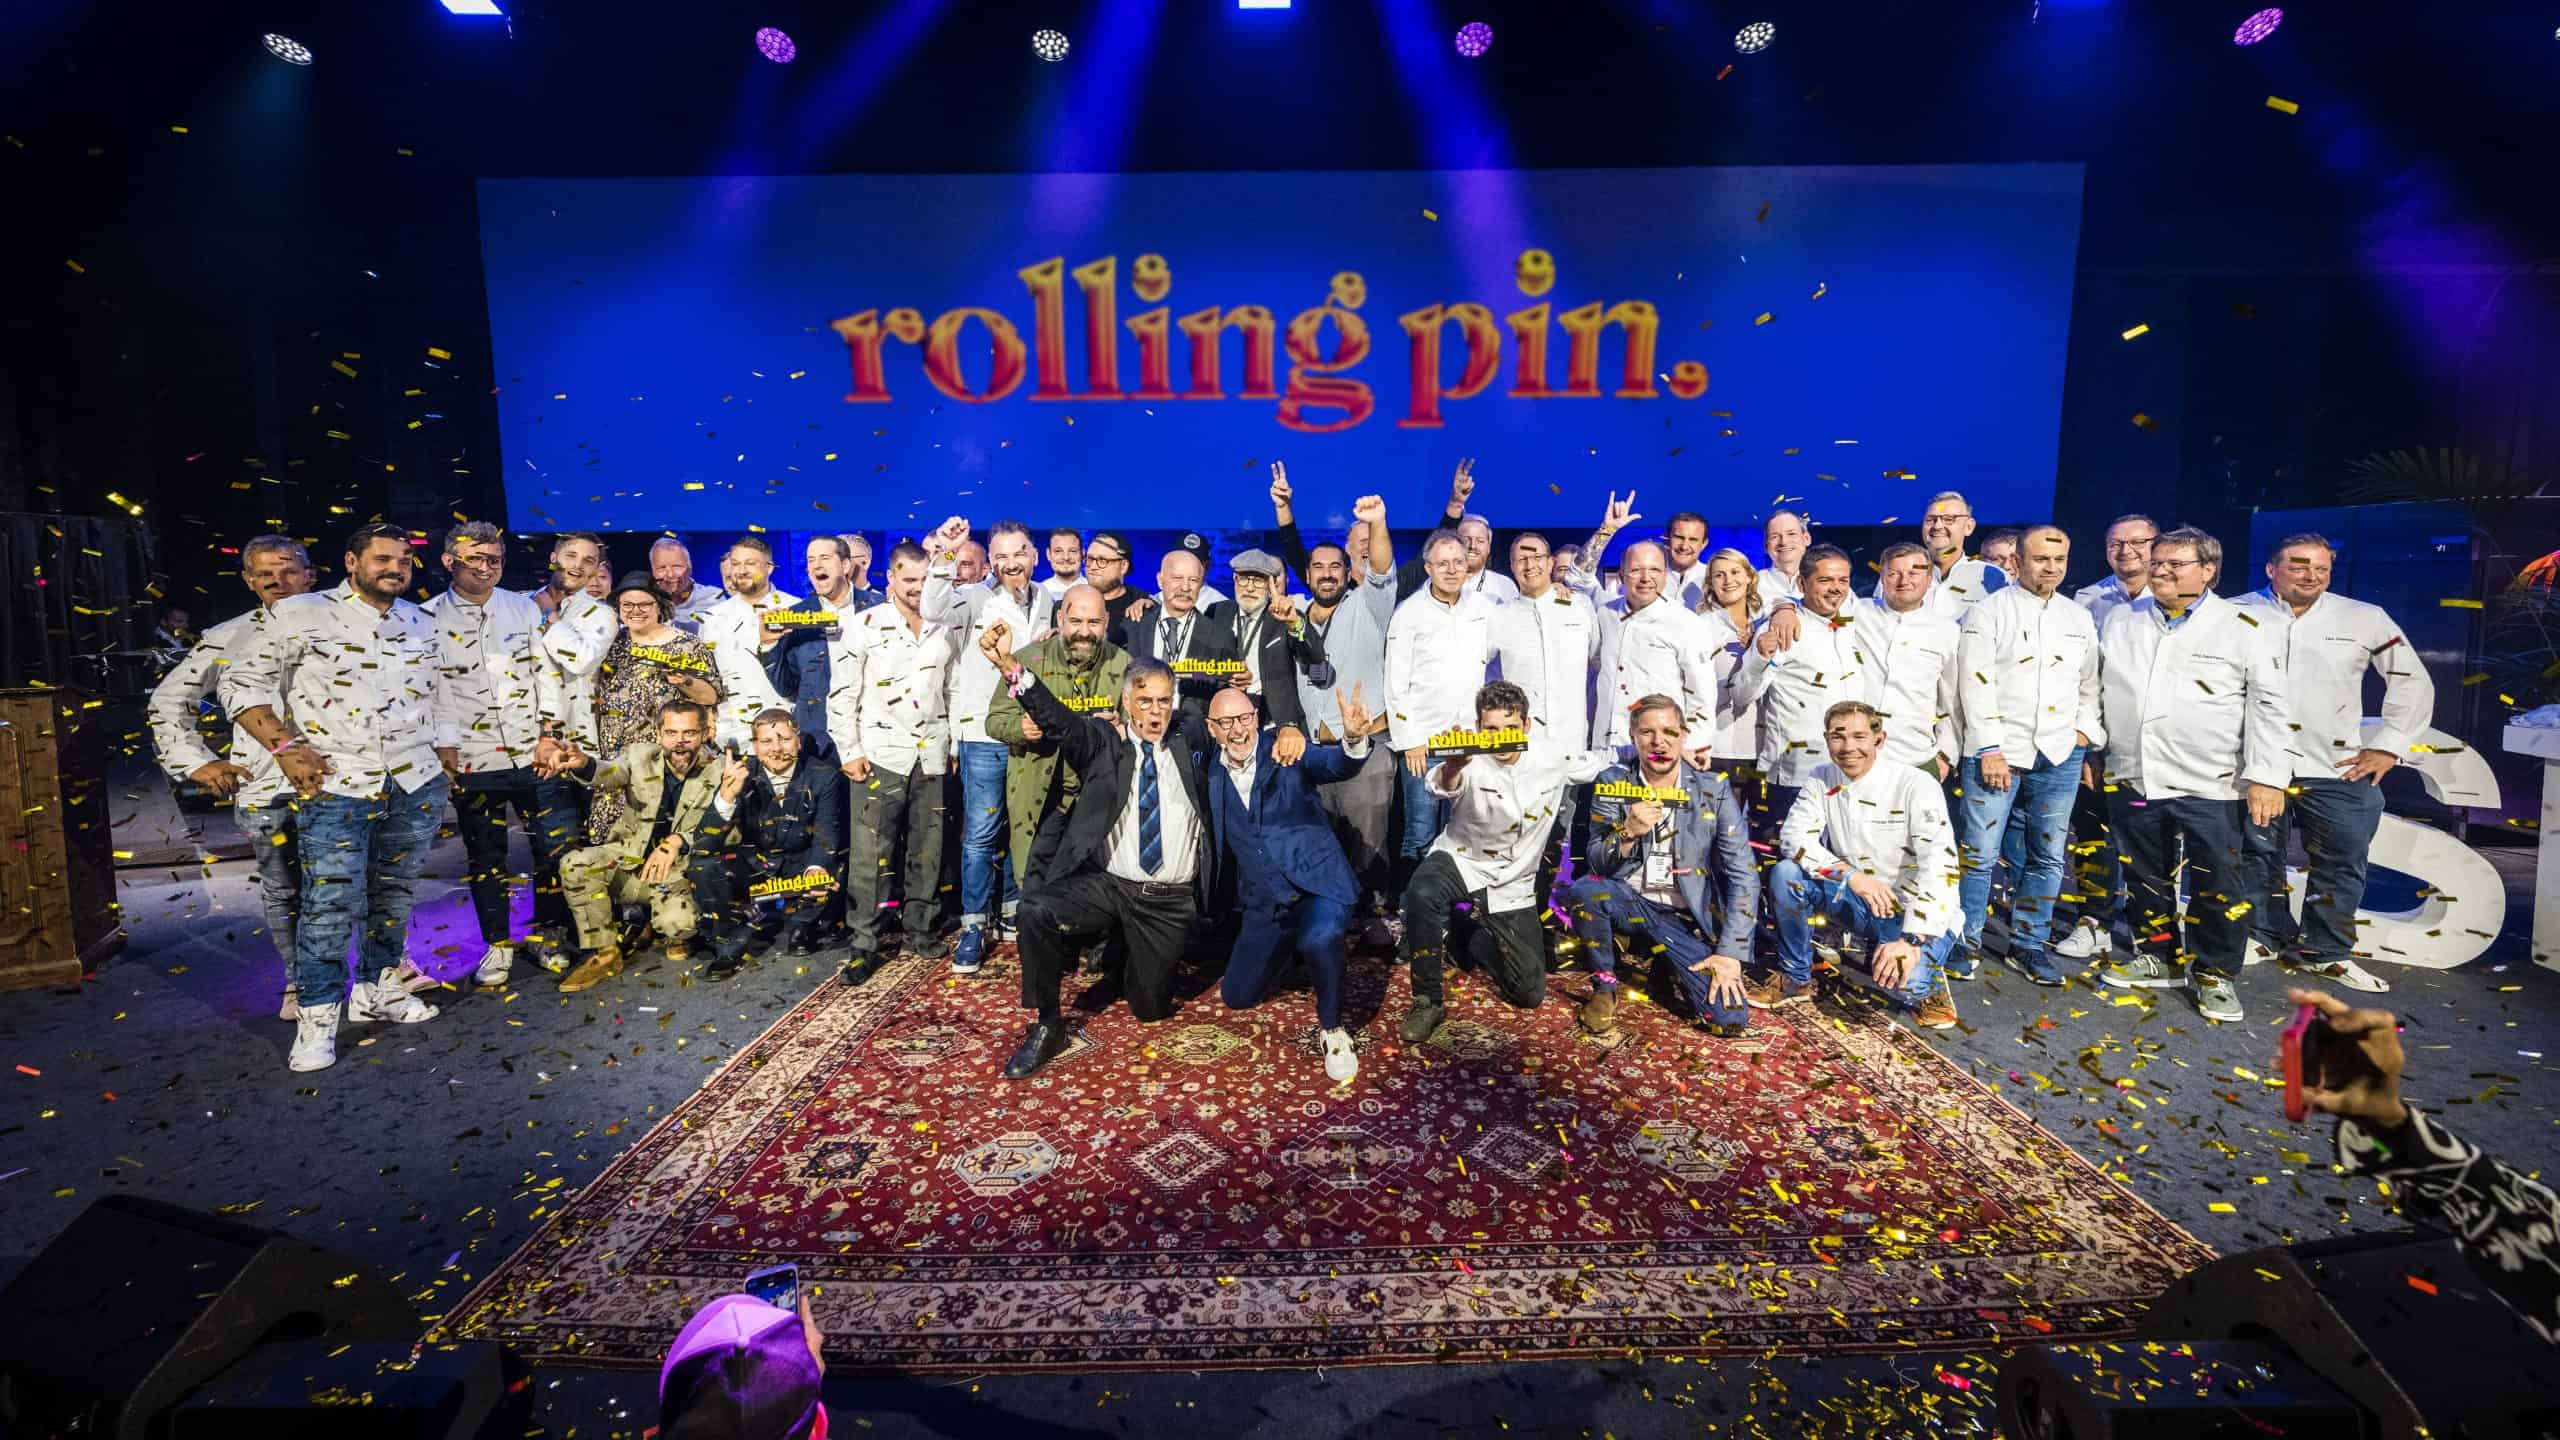 Rolling Pin Awards - das sind die GewinnerInnen